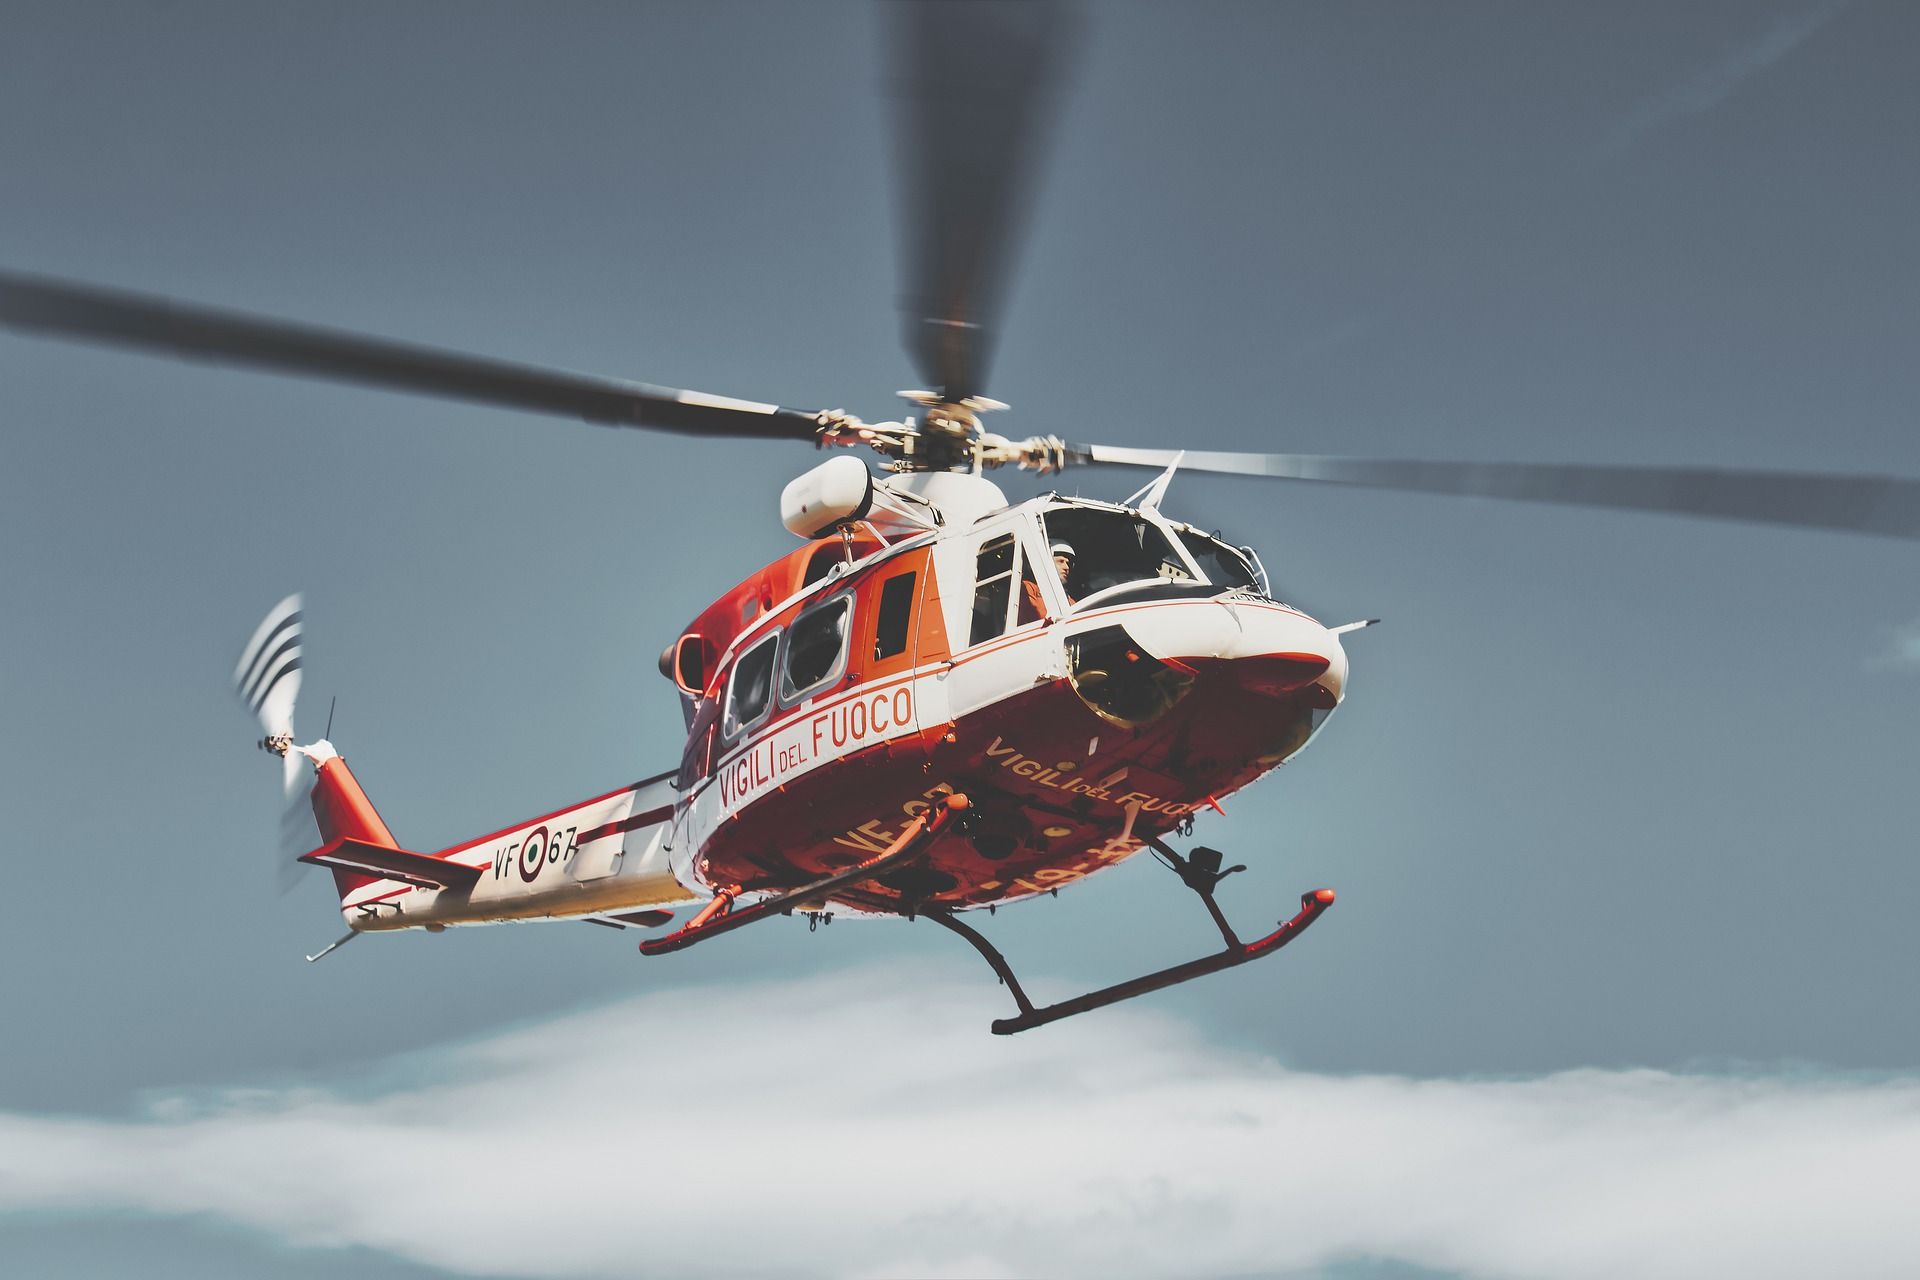 2 Blackhawk helicopters crash near Utah ski resort during training exercise